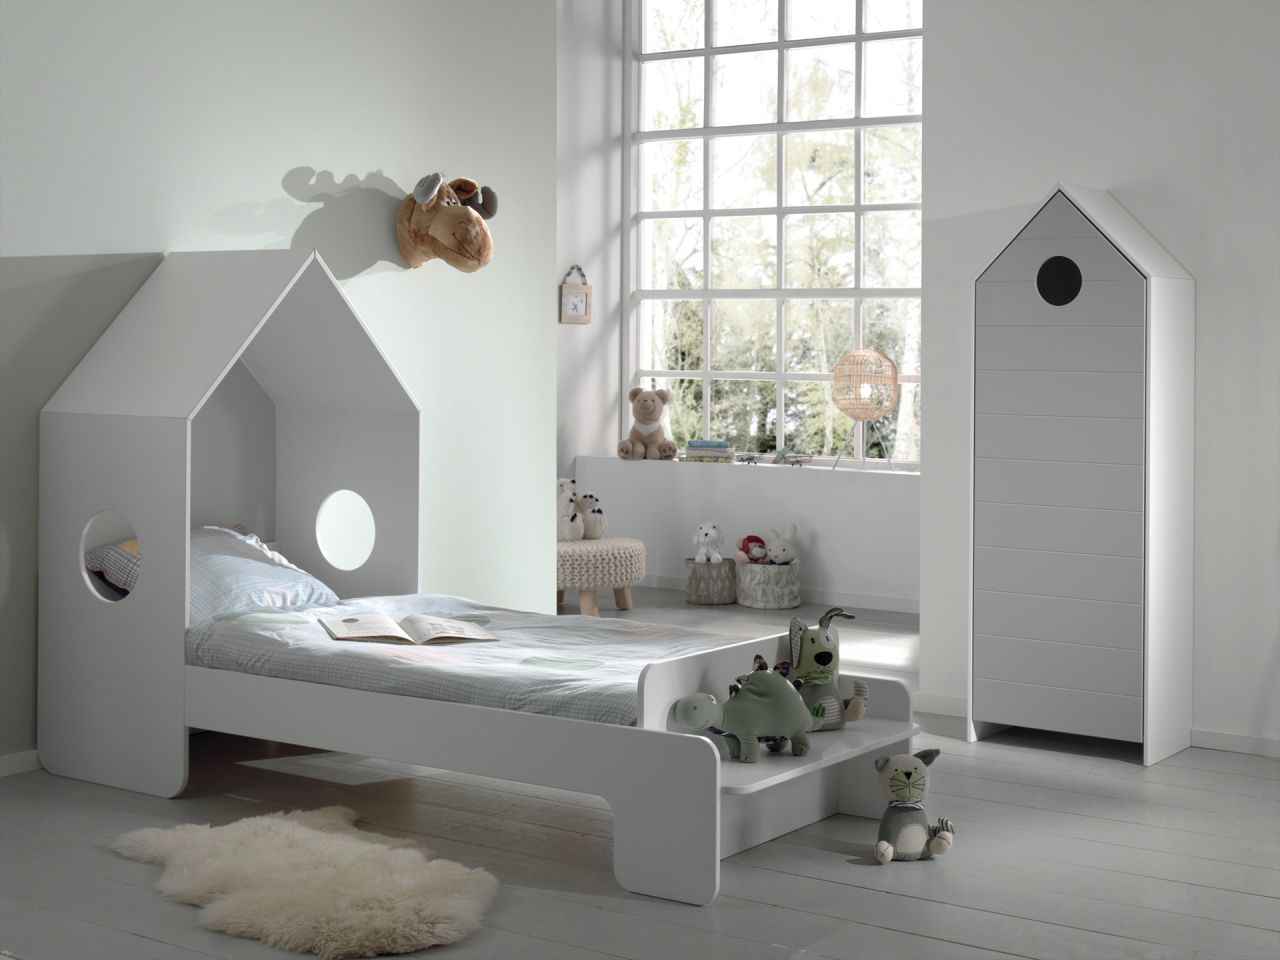 Vipack: Artikelset "CASAMI" 2- Teilig- Kinderbett Wäscheschrank -Weiß / Grau von VIPACK